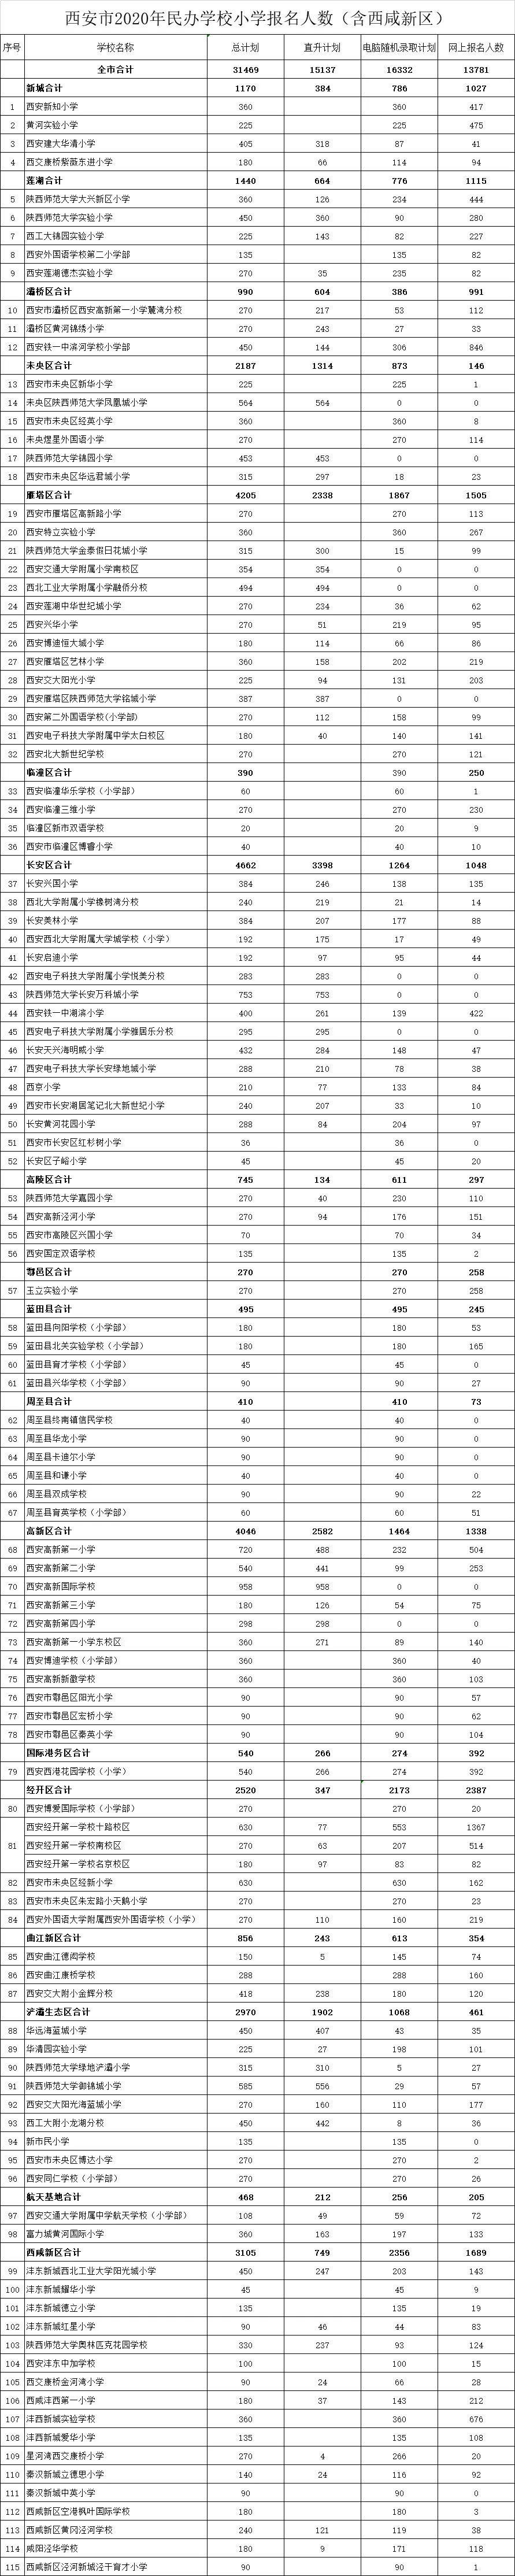 2020陕西西安市民办学校中小学报名人数公布1